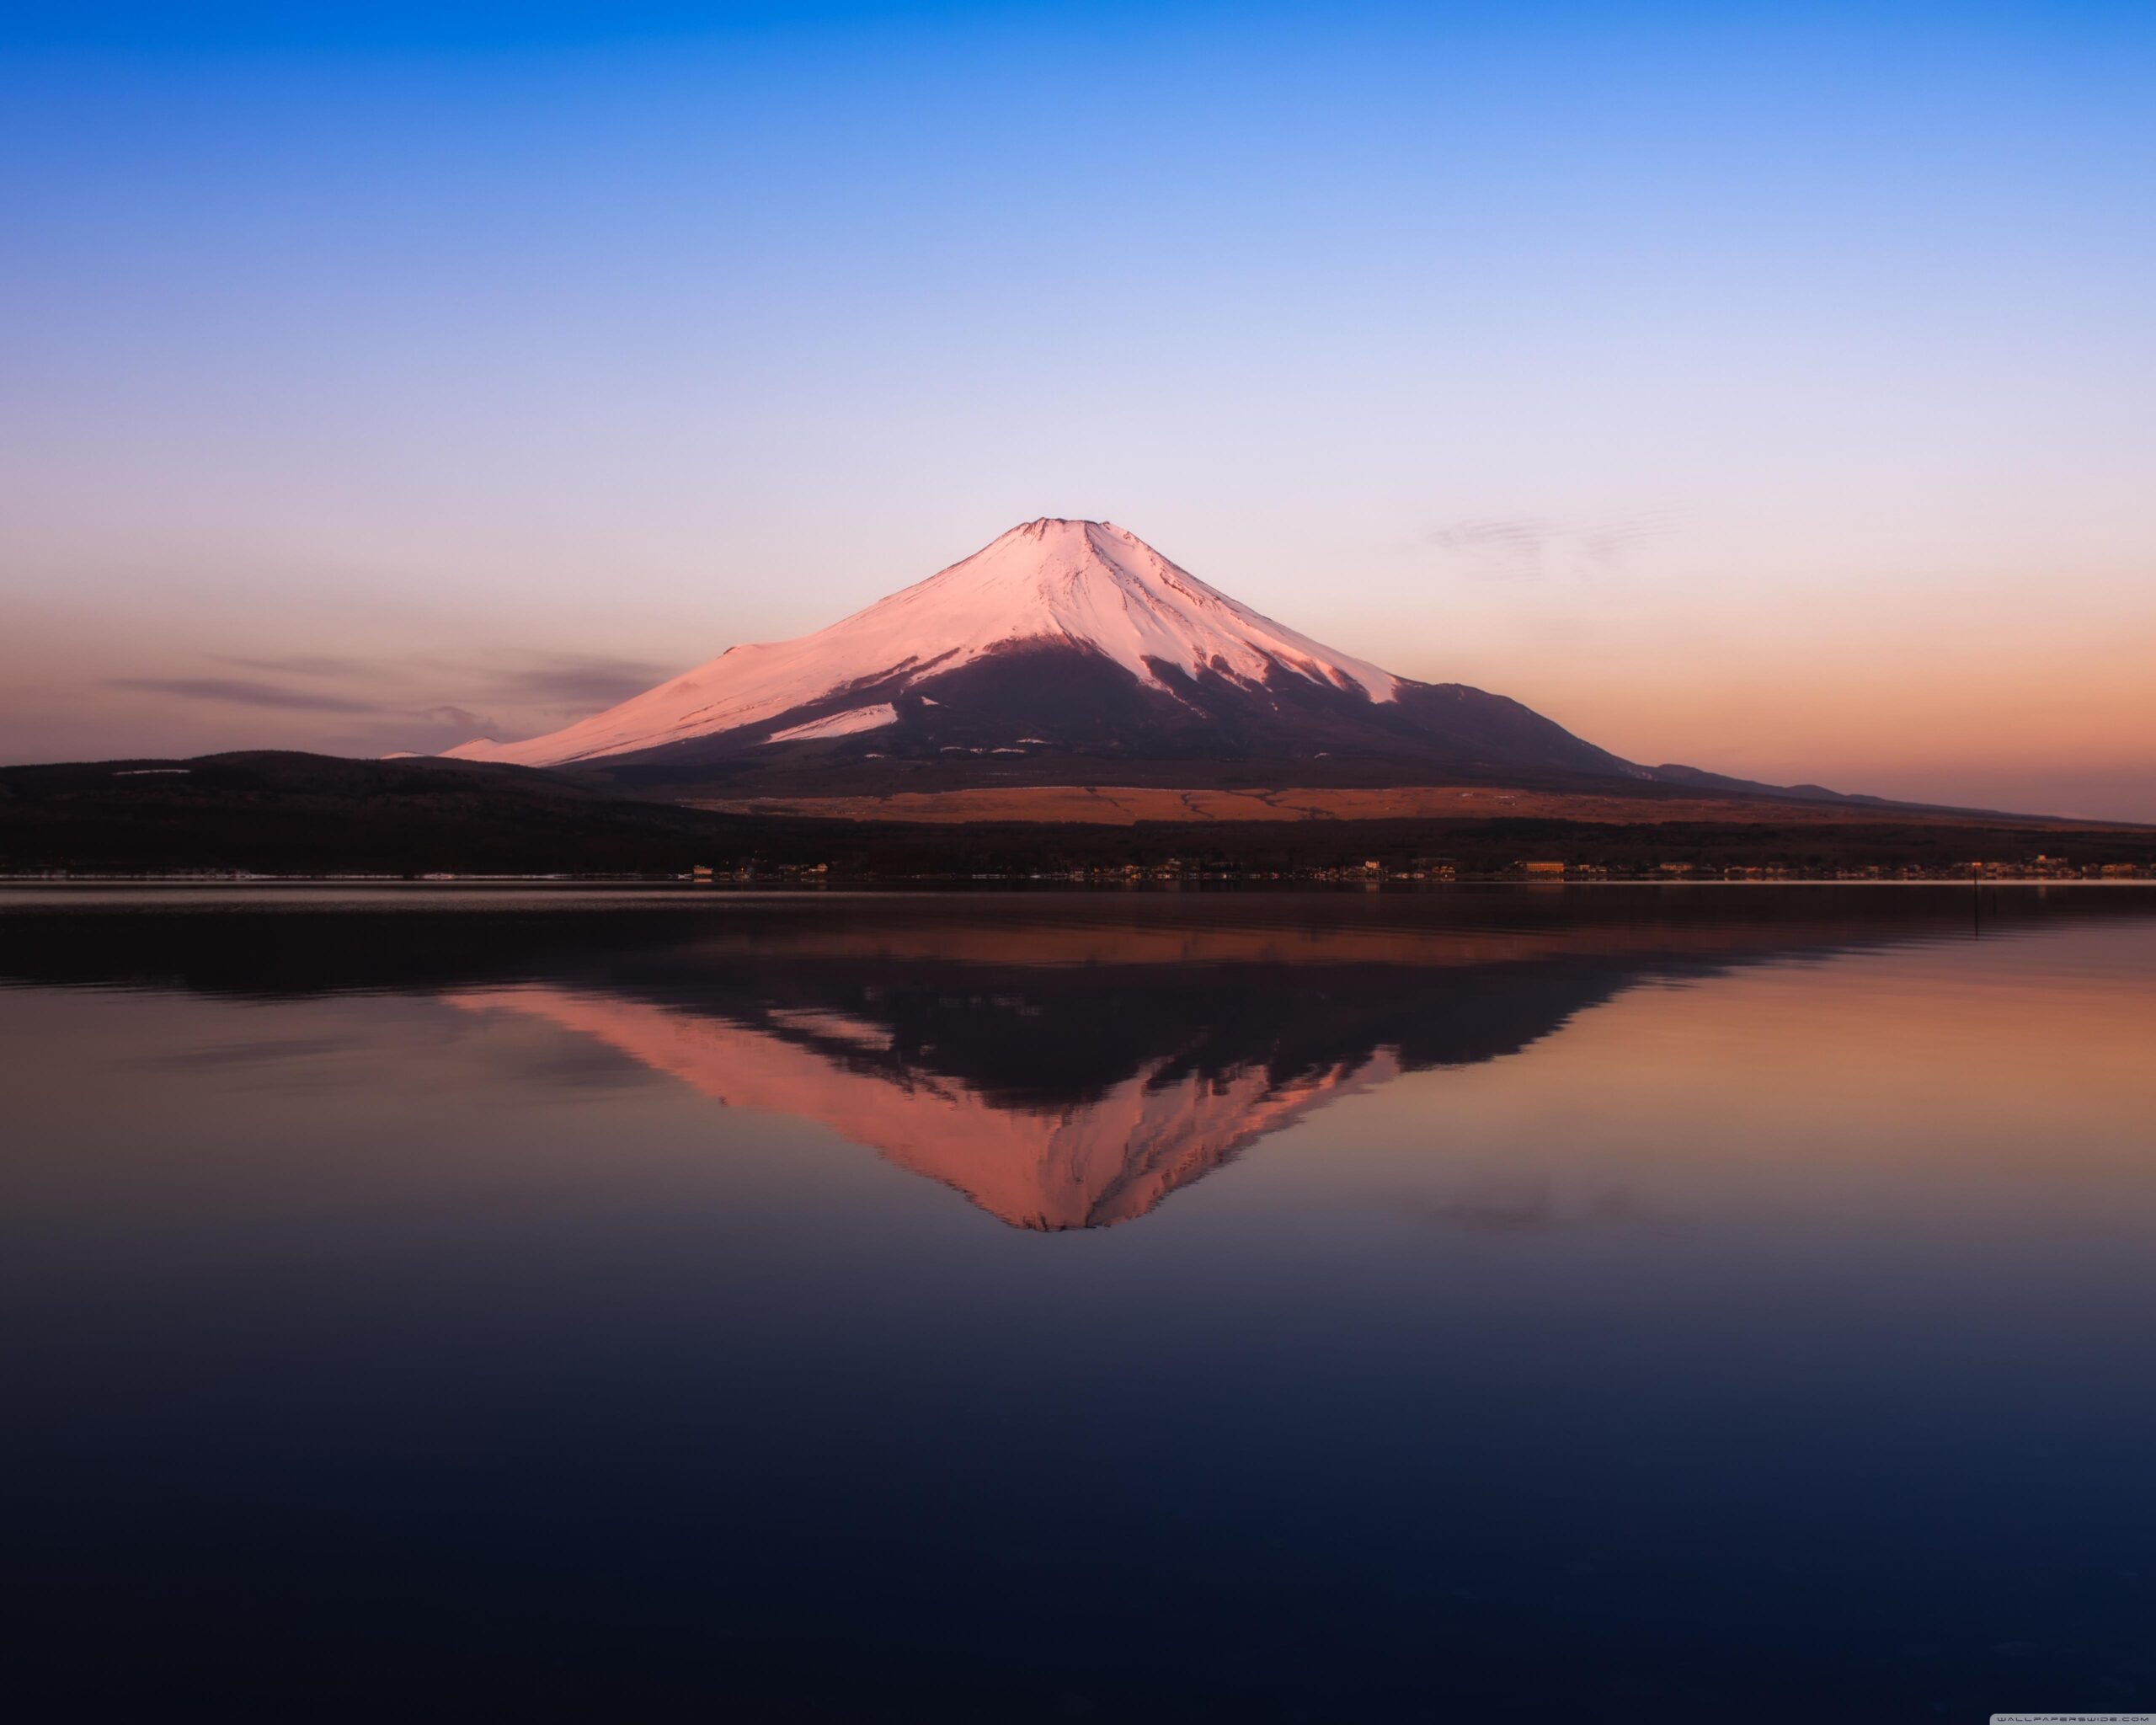 Mount Fuji Landscapes ❤ K 2K Desk 4K Wallpapers for K Ultra 2K TV